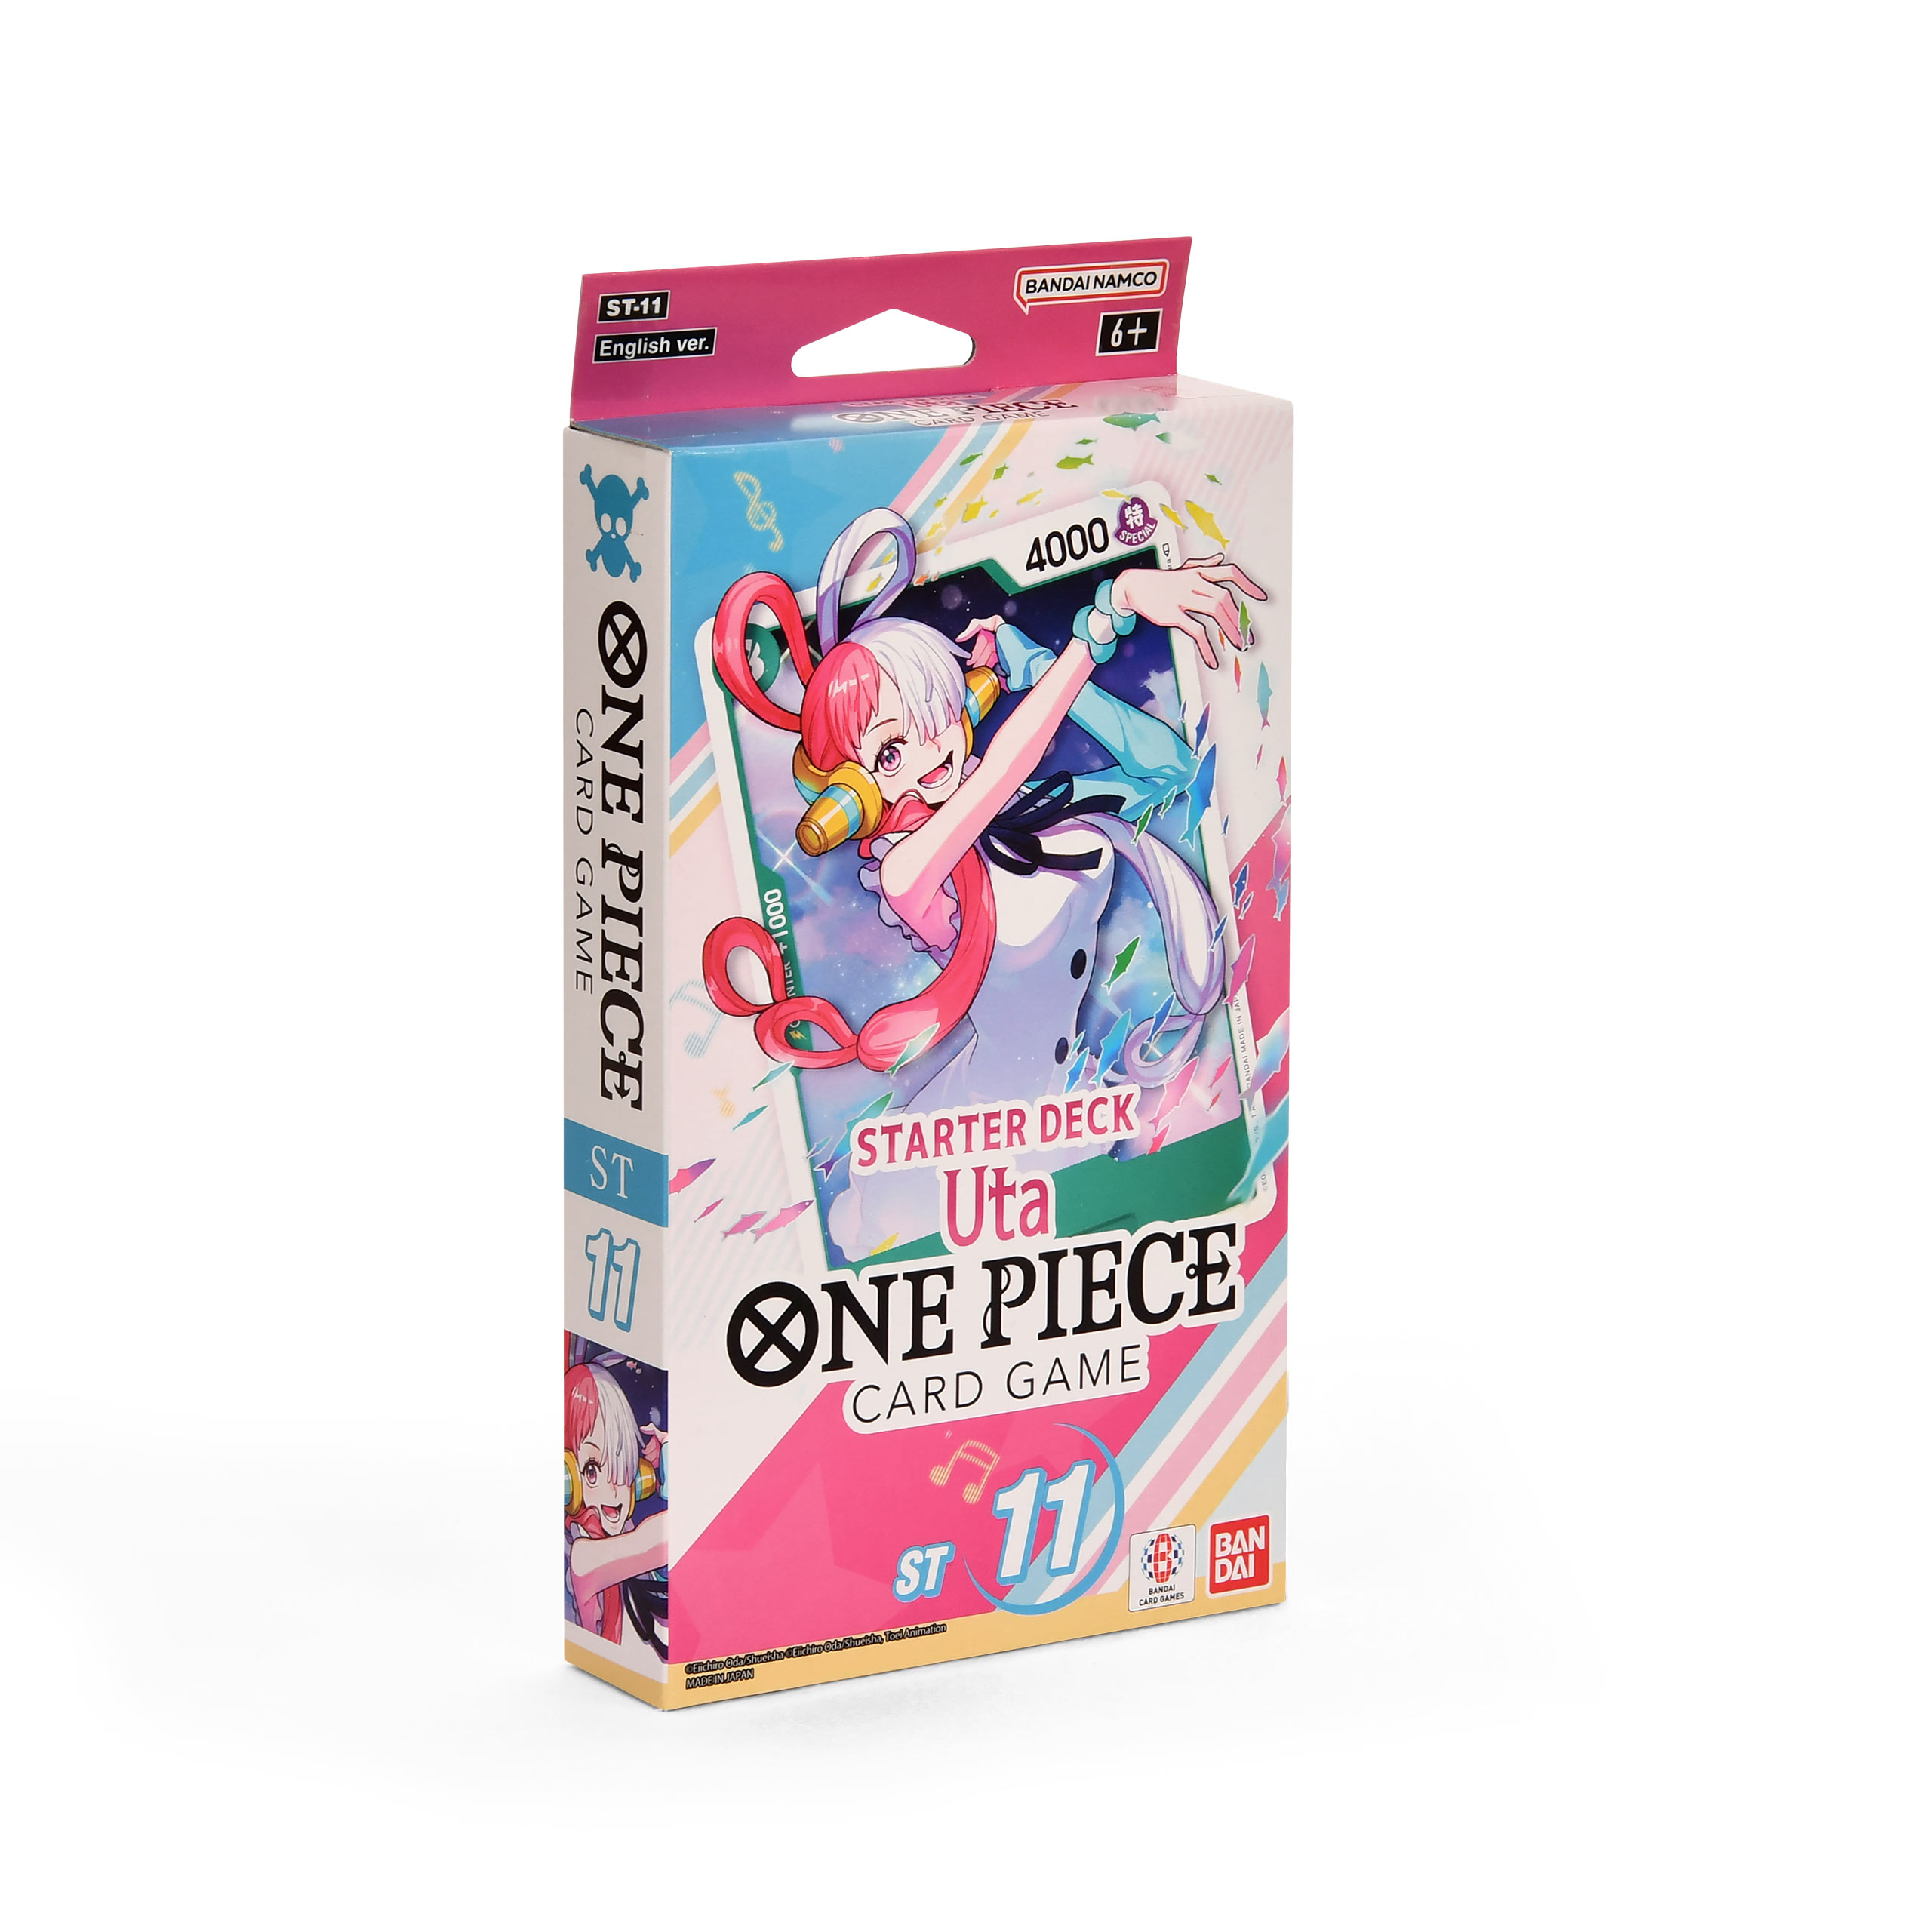 One Piece Card Game - Uta Starter Deck englische Version